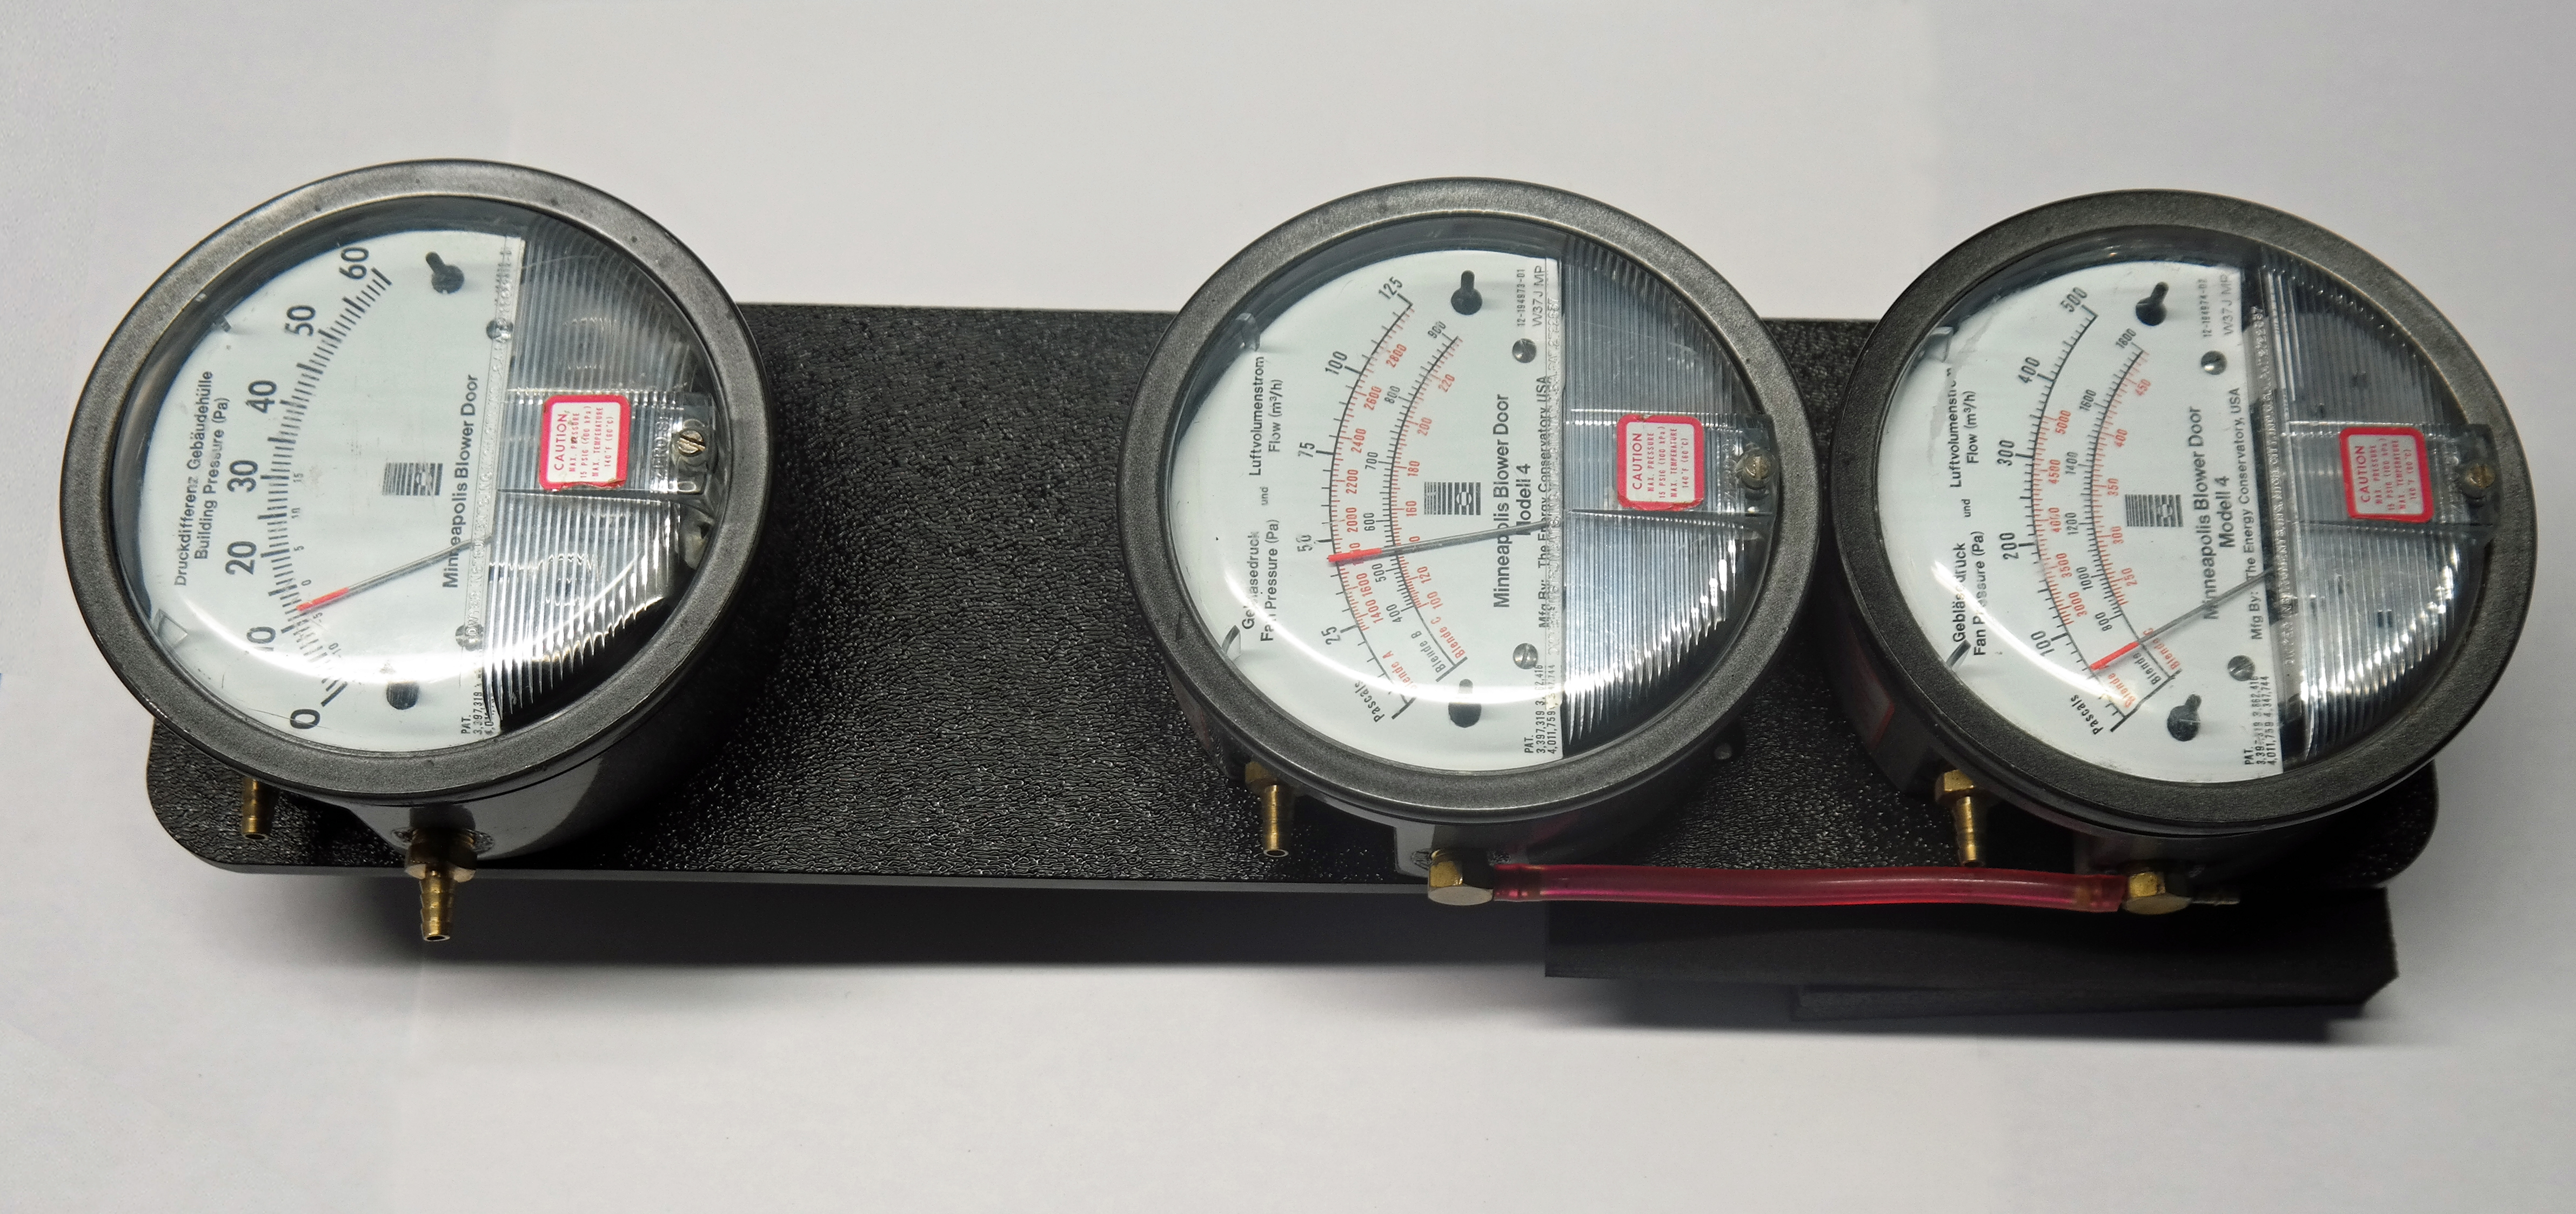 Manufacturer's calibration of the analog pressure gauges